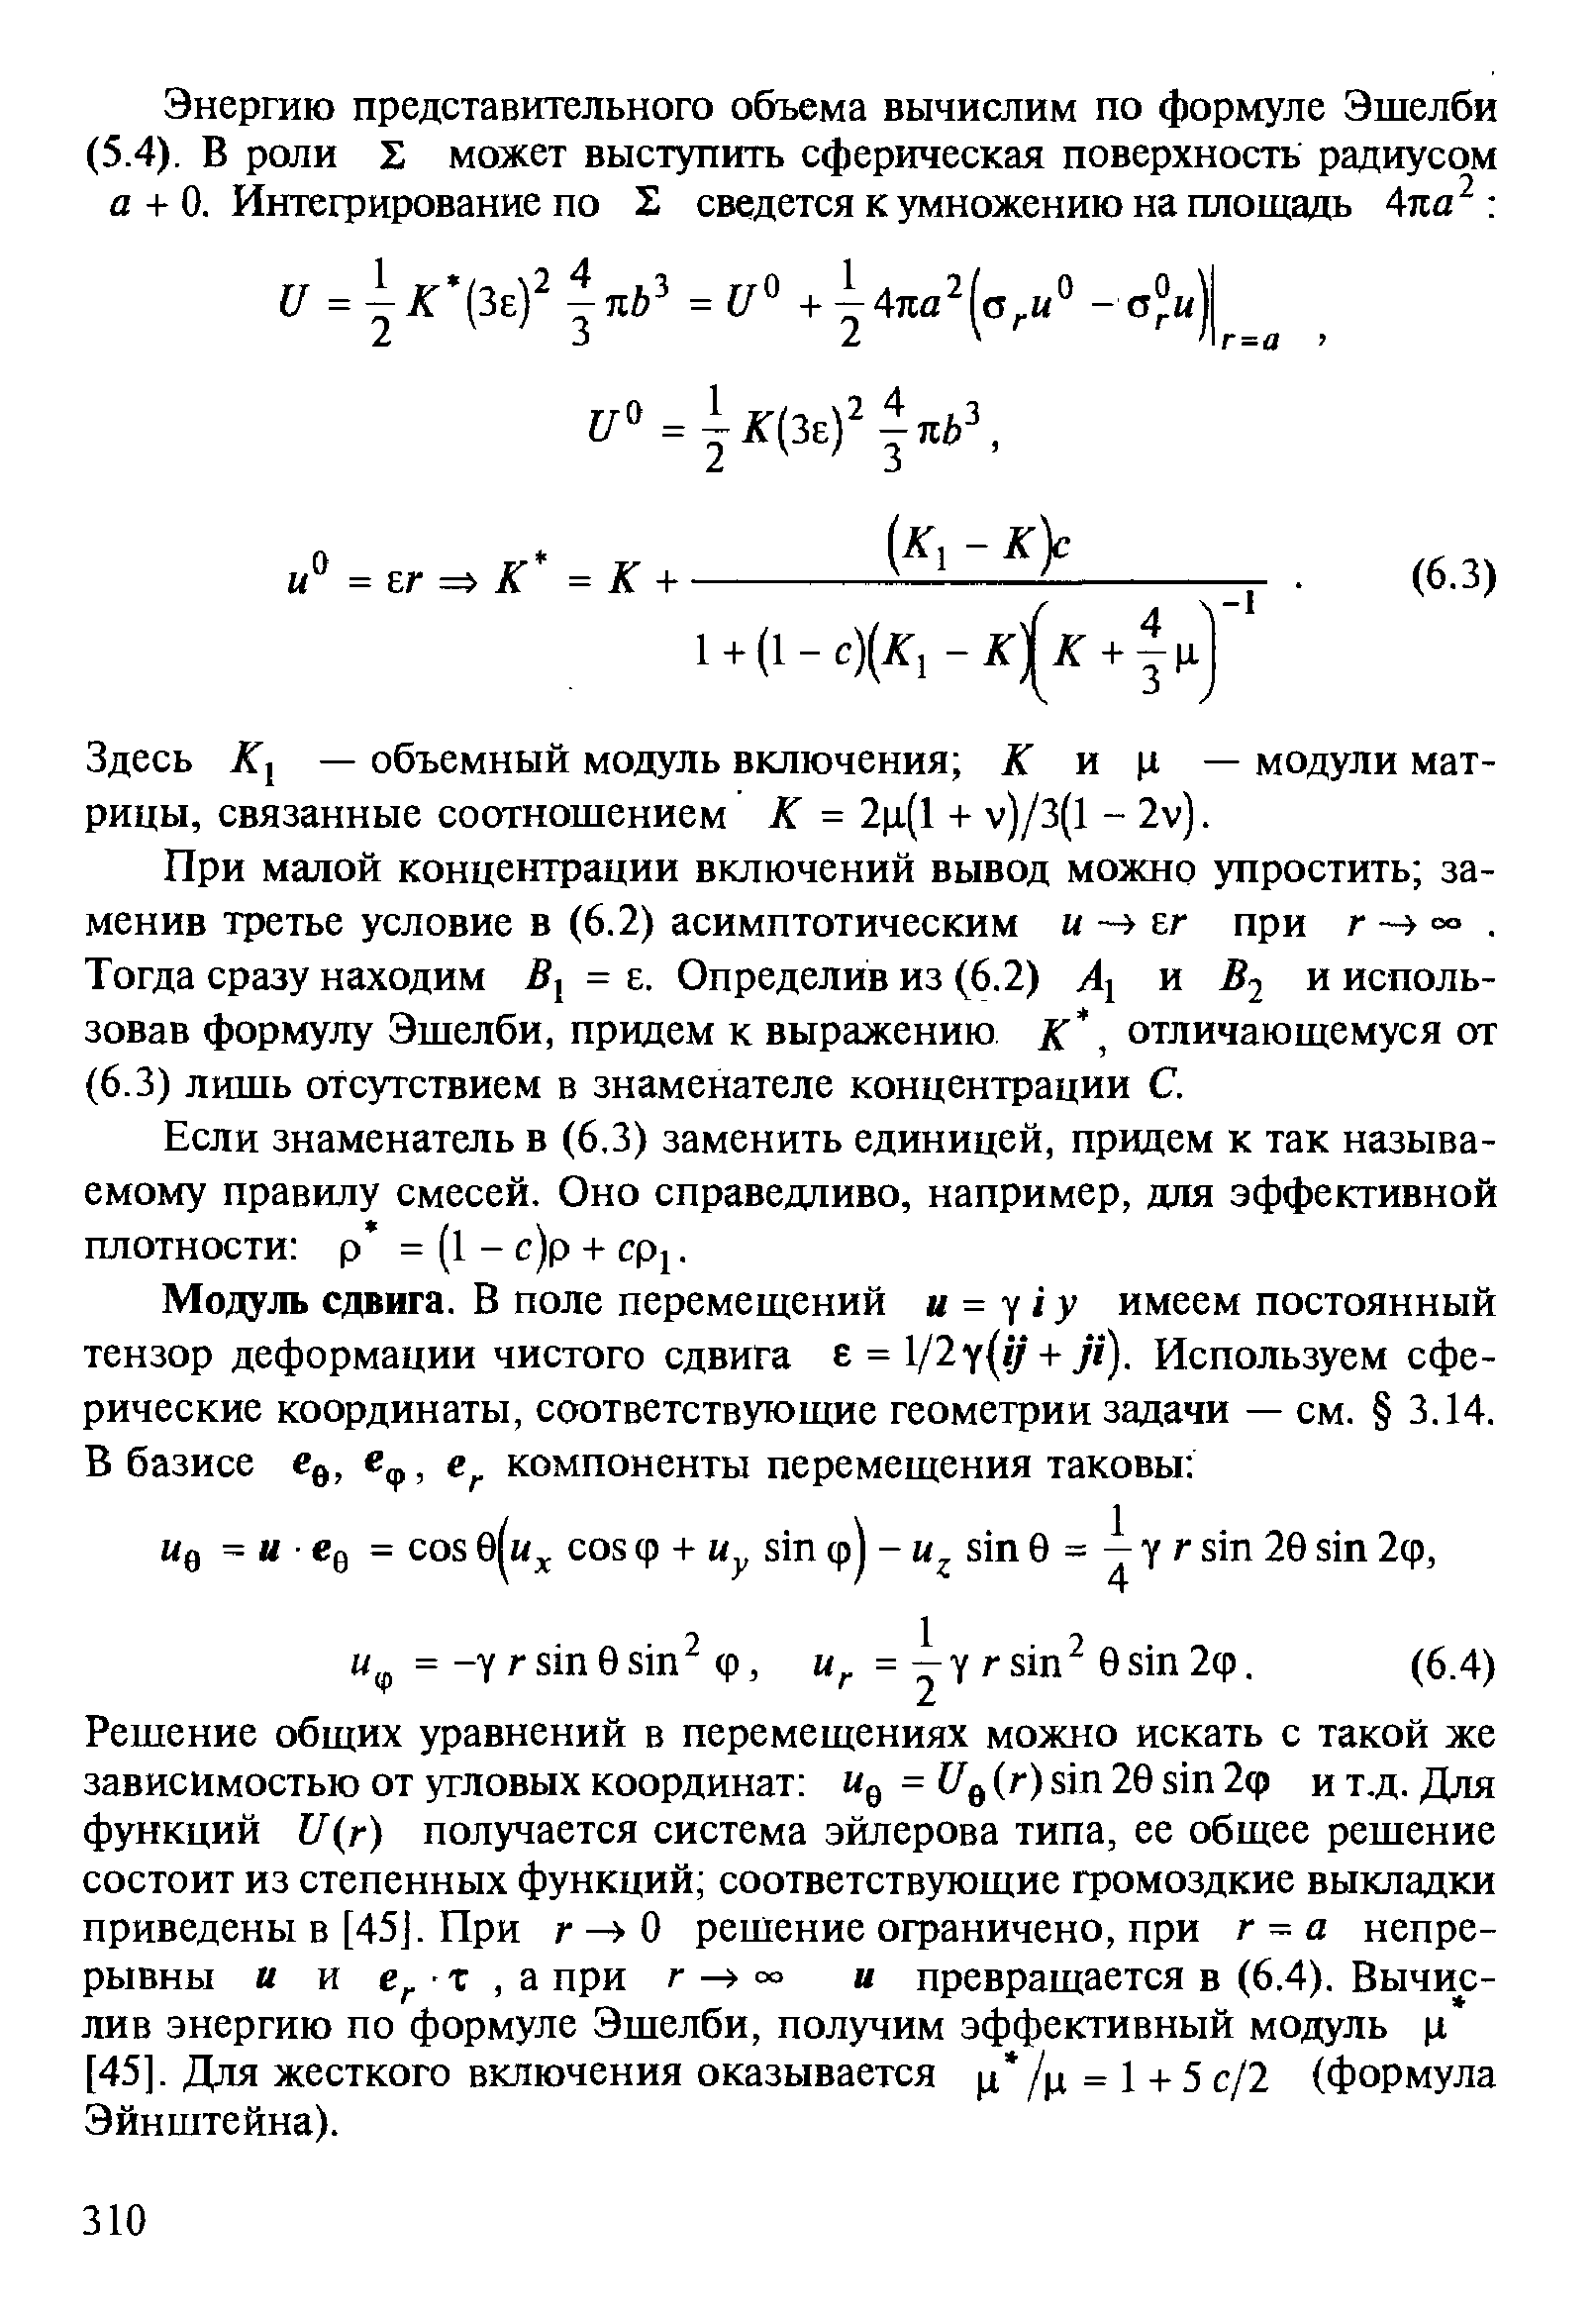 Здесь Ку — объемный модуль включения К к к — модули матрицы, связанные соотношением К = 2ц(1 + v)/3(l - 2v).
